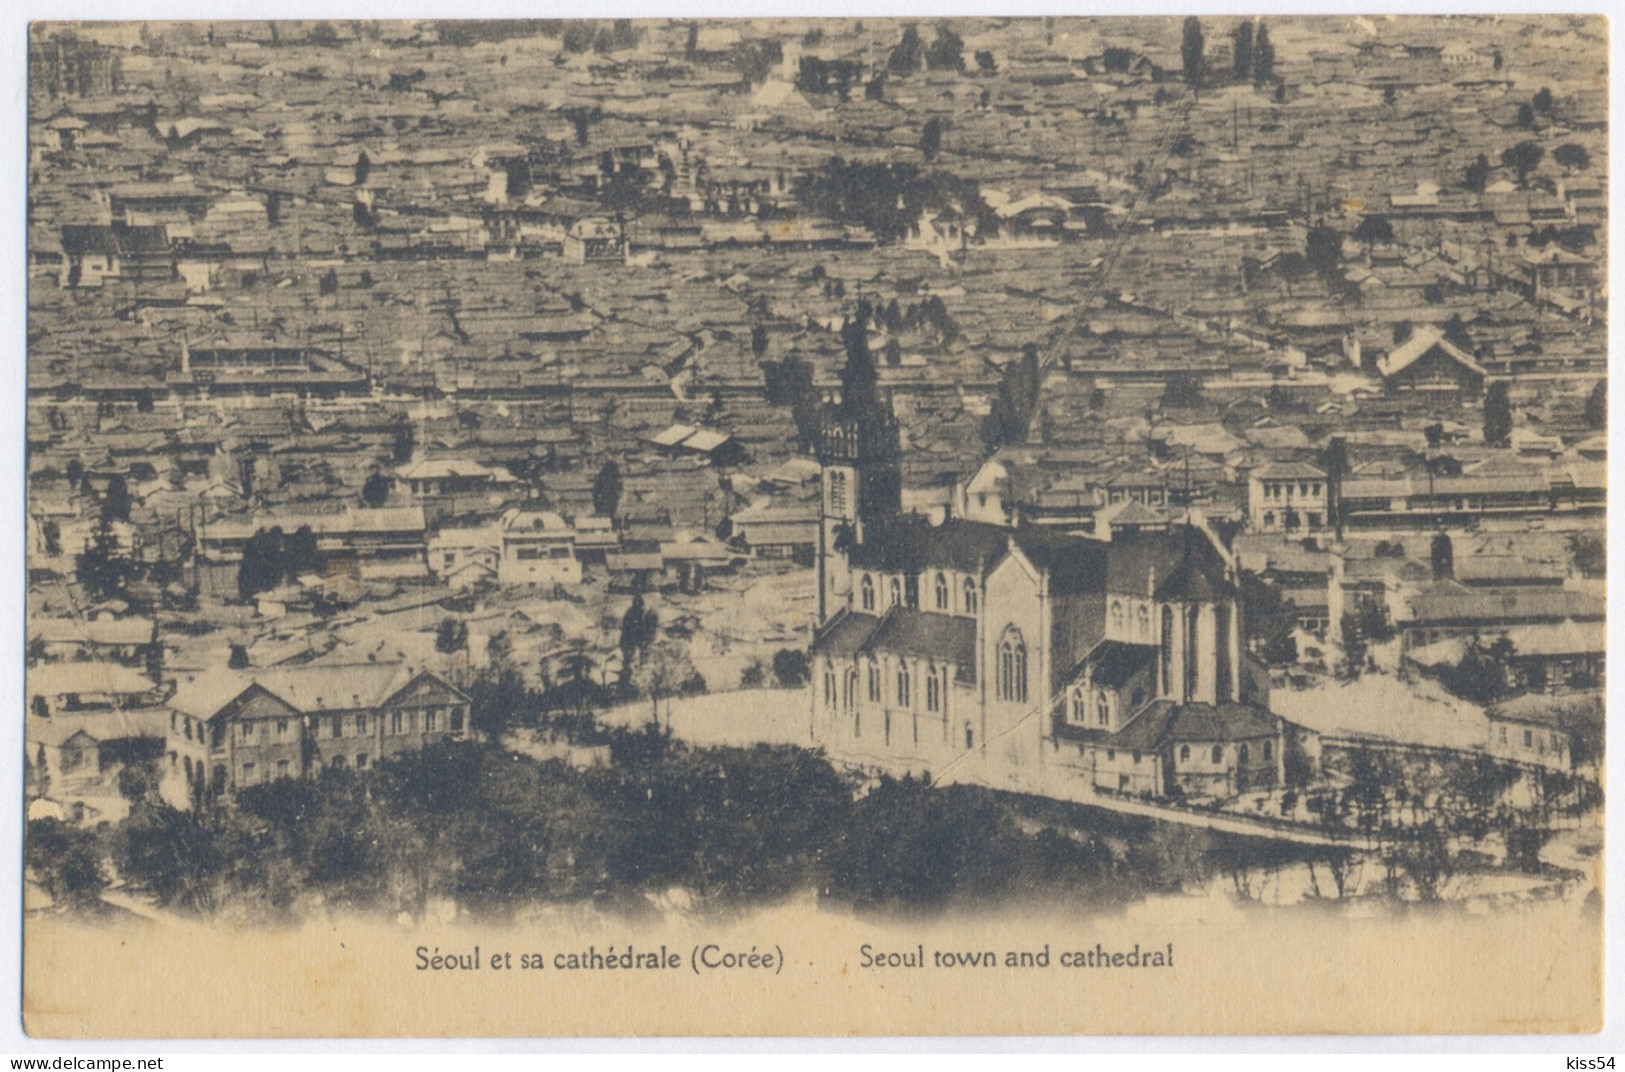 KOR 3 - 10337 SEOUL, Korea, Cathedral - Old Postcard - Unused - Korea, South